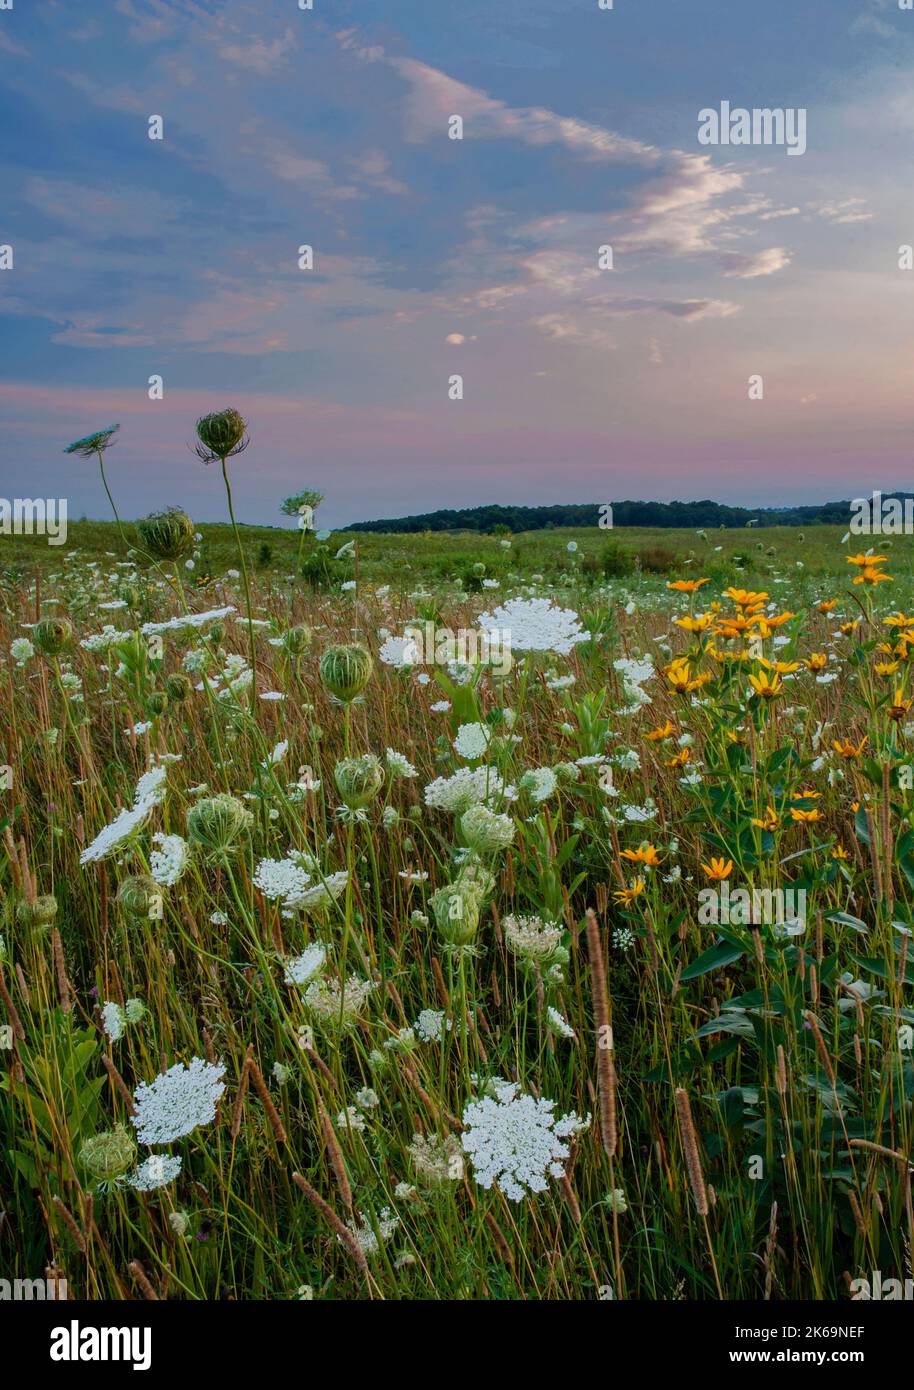 La dentelle de la reine Ann fleurit dans la prairie tandis que le soleil se couche au Nachusa Grasslands nature Conservancy, Ogle & Lee Counties, Illinois Banque D'Images